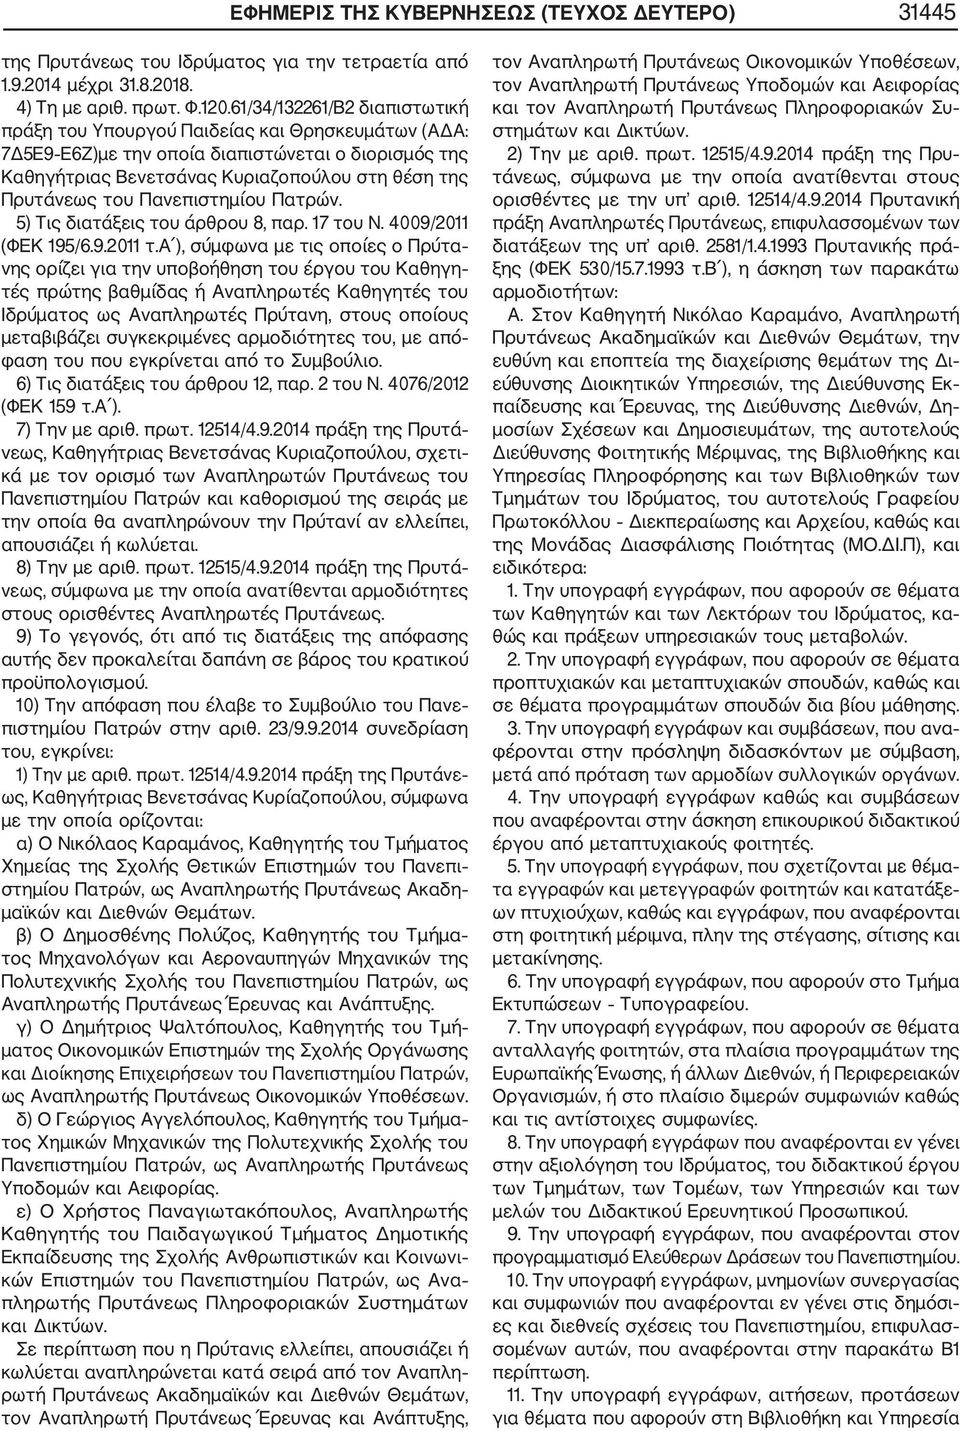 Πανεπιστημίου Πατρών. 5) Τις διατάξεις του άρθρου 8, παρ. 17 του Ν. 4009/2011 (ΦΕΚ 195/6.9.2011 τ.